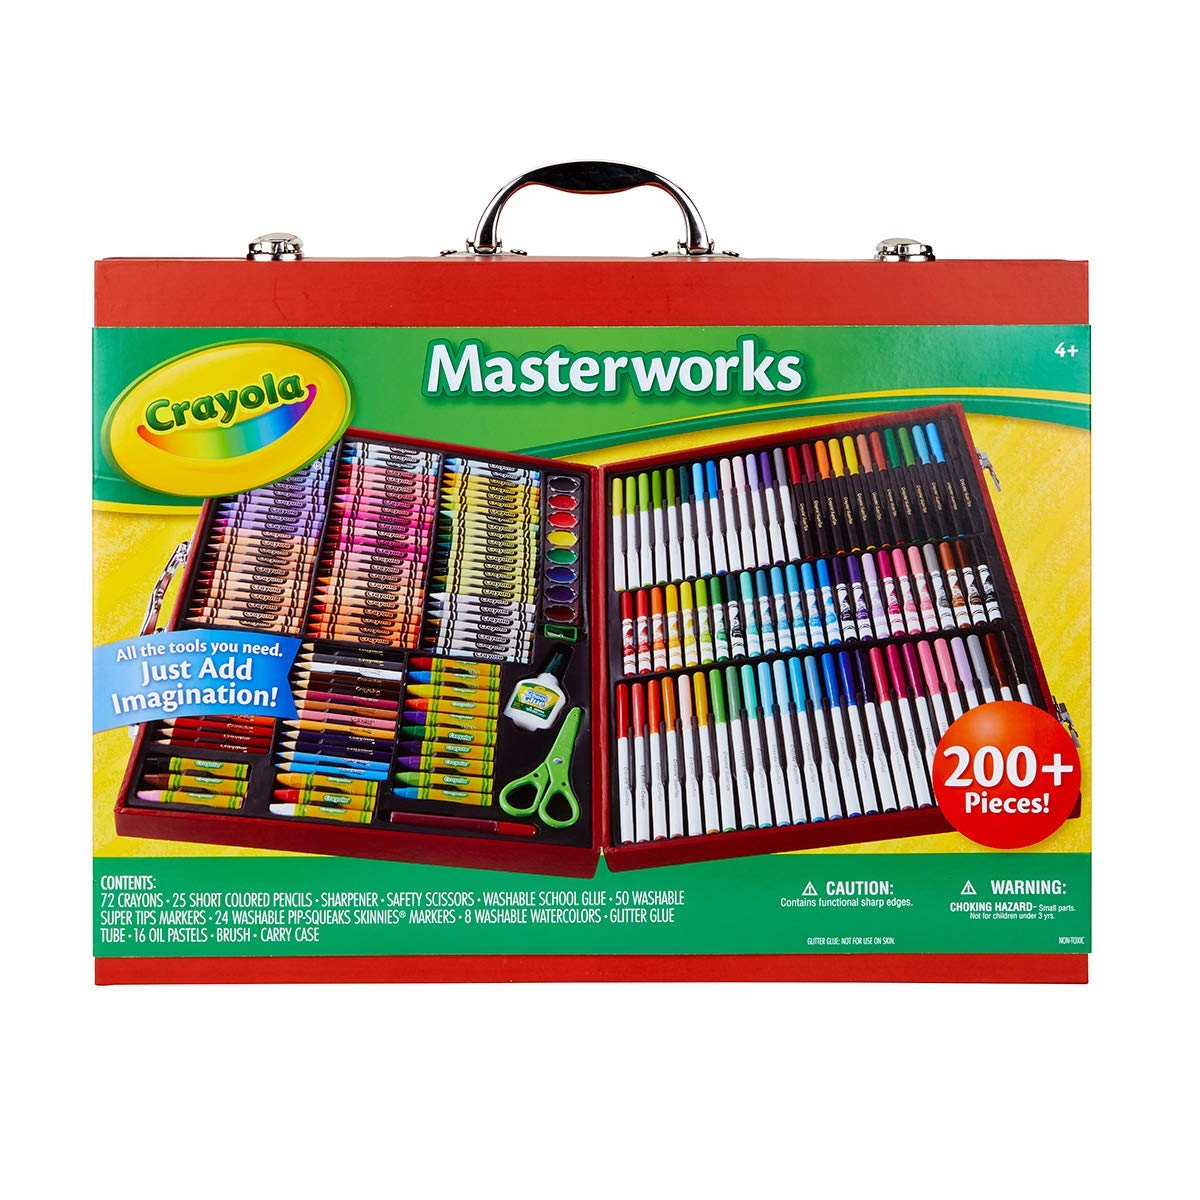 Crayola Masterworks Art Case (Over 200 Pieces) Only $33.89! (Reg $53.49)